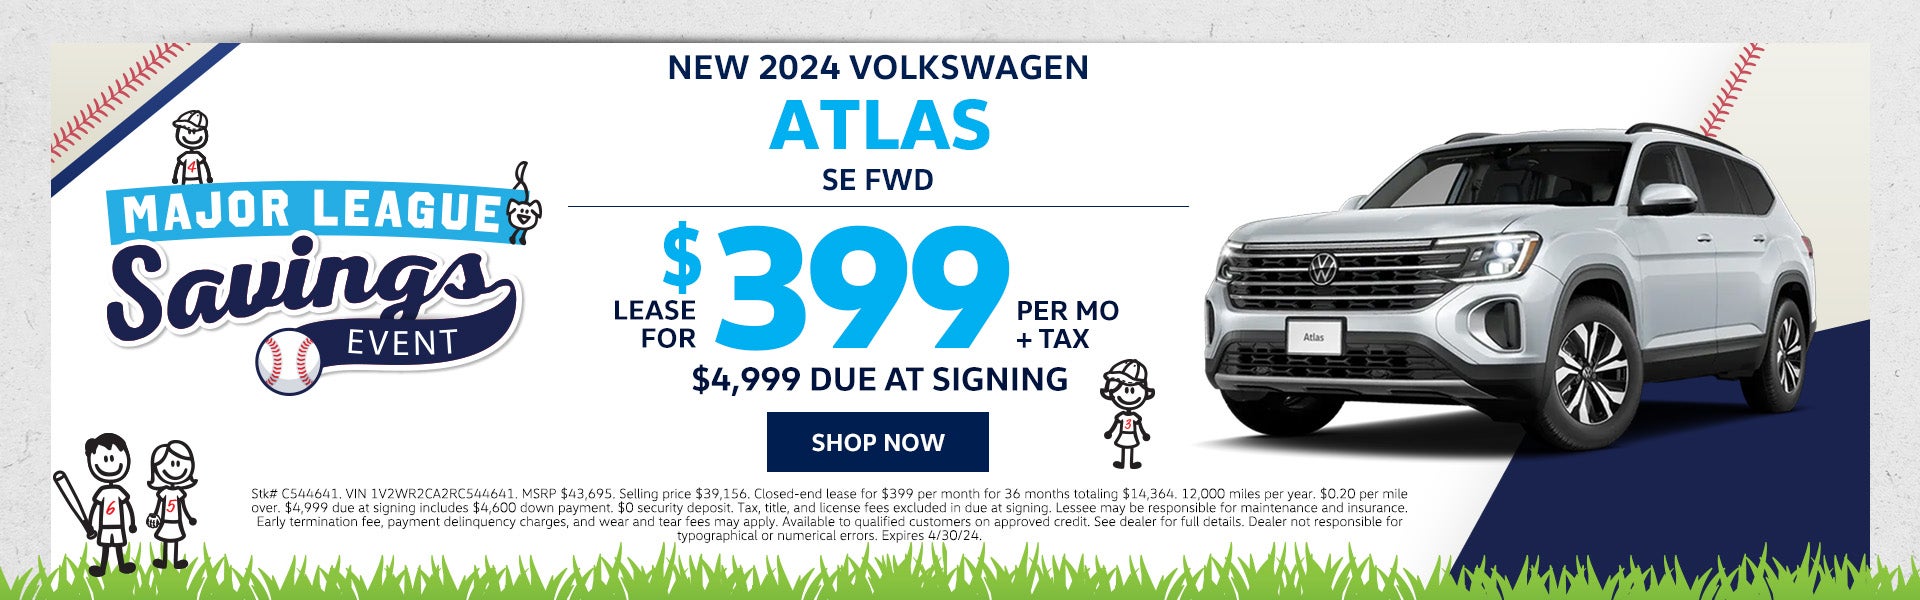 New 2024 VW Atlas